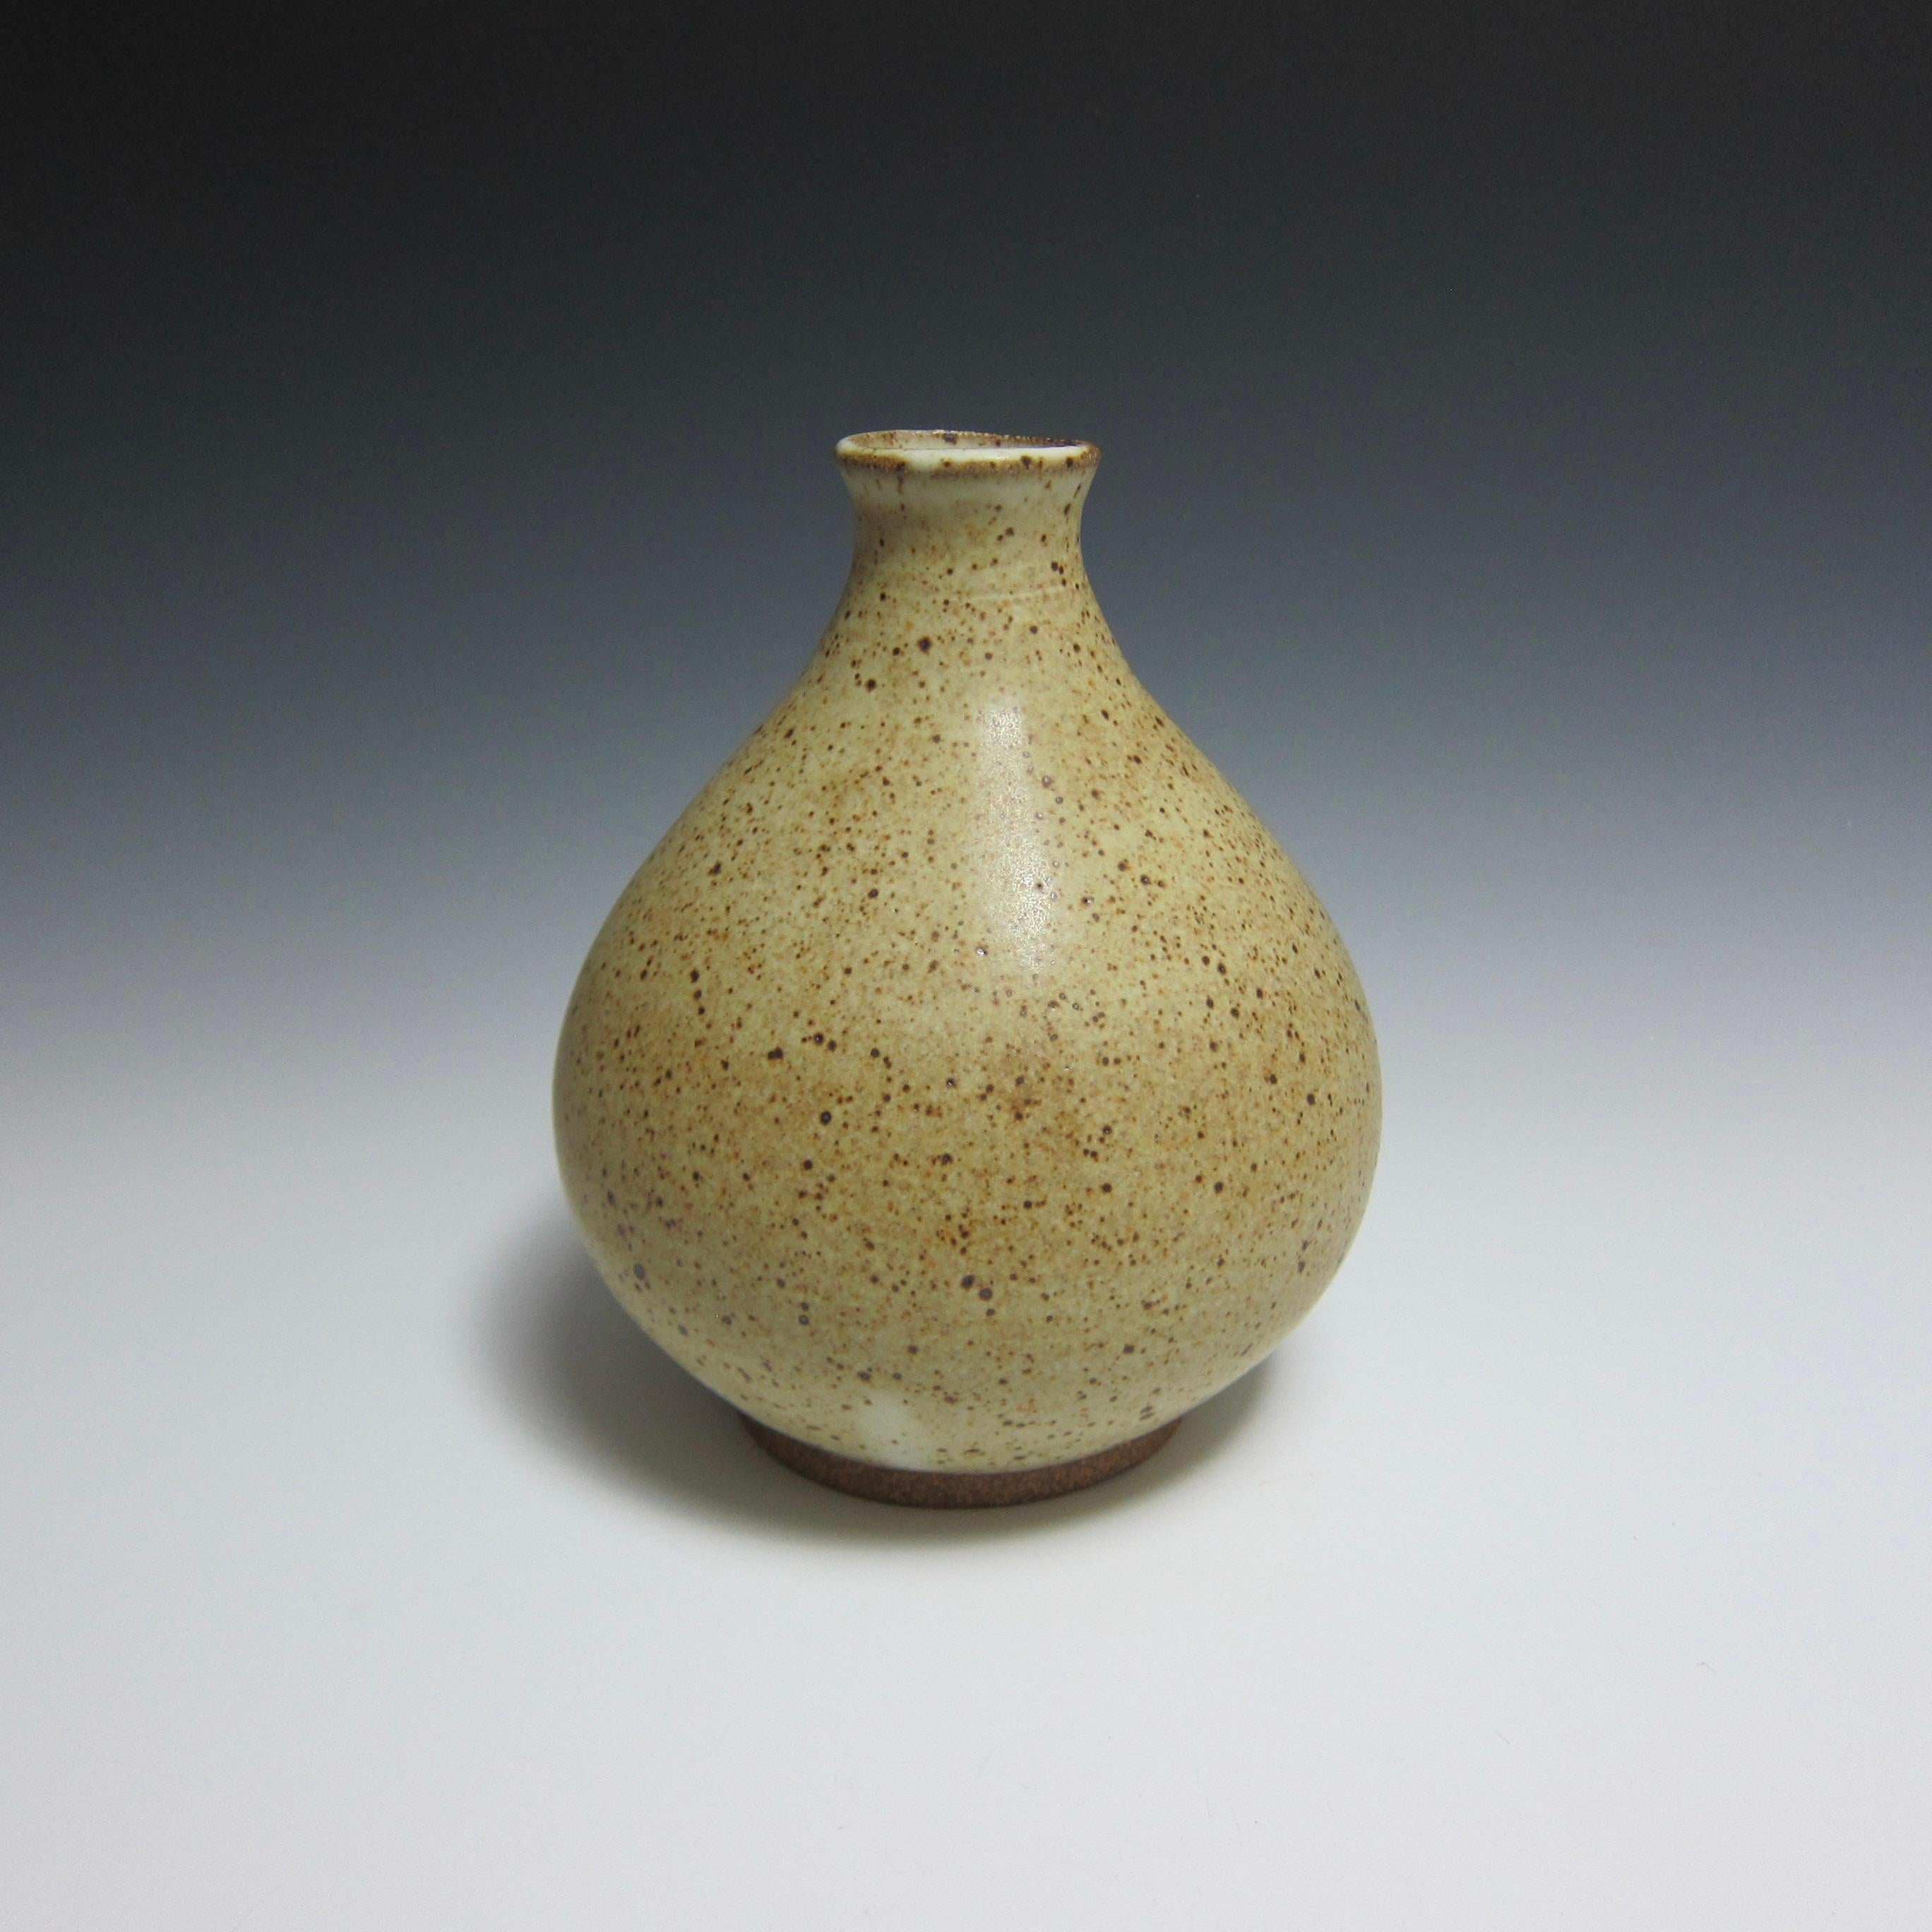 Radgedrehte Keramikvase von Jason Fox

Als Teil seiner Flower Bottle Serie hat sich der amerikanische Keramikkünstler Jason Fox von der gleichnamigen antiken koreanischen Silhouette inspirieren lassen, um eine Vase zu schaffen, die sich sowohl für